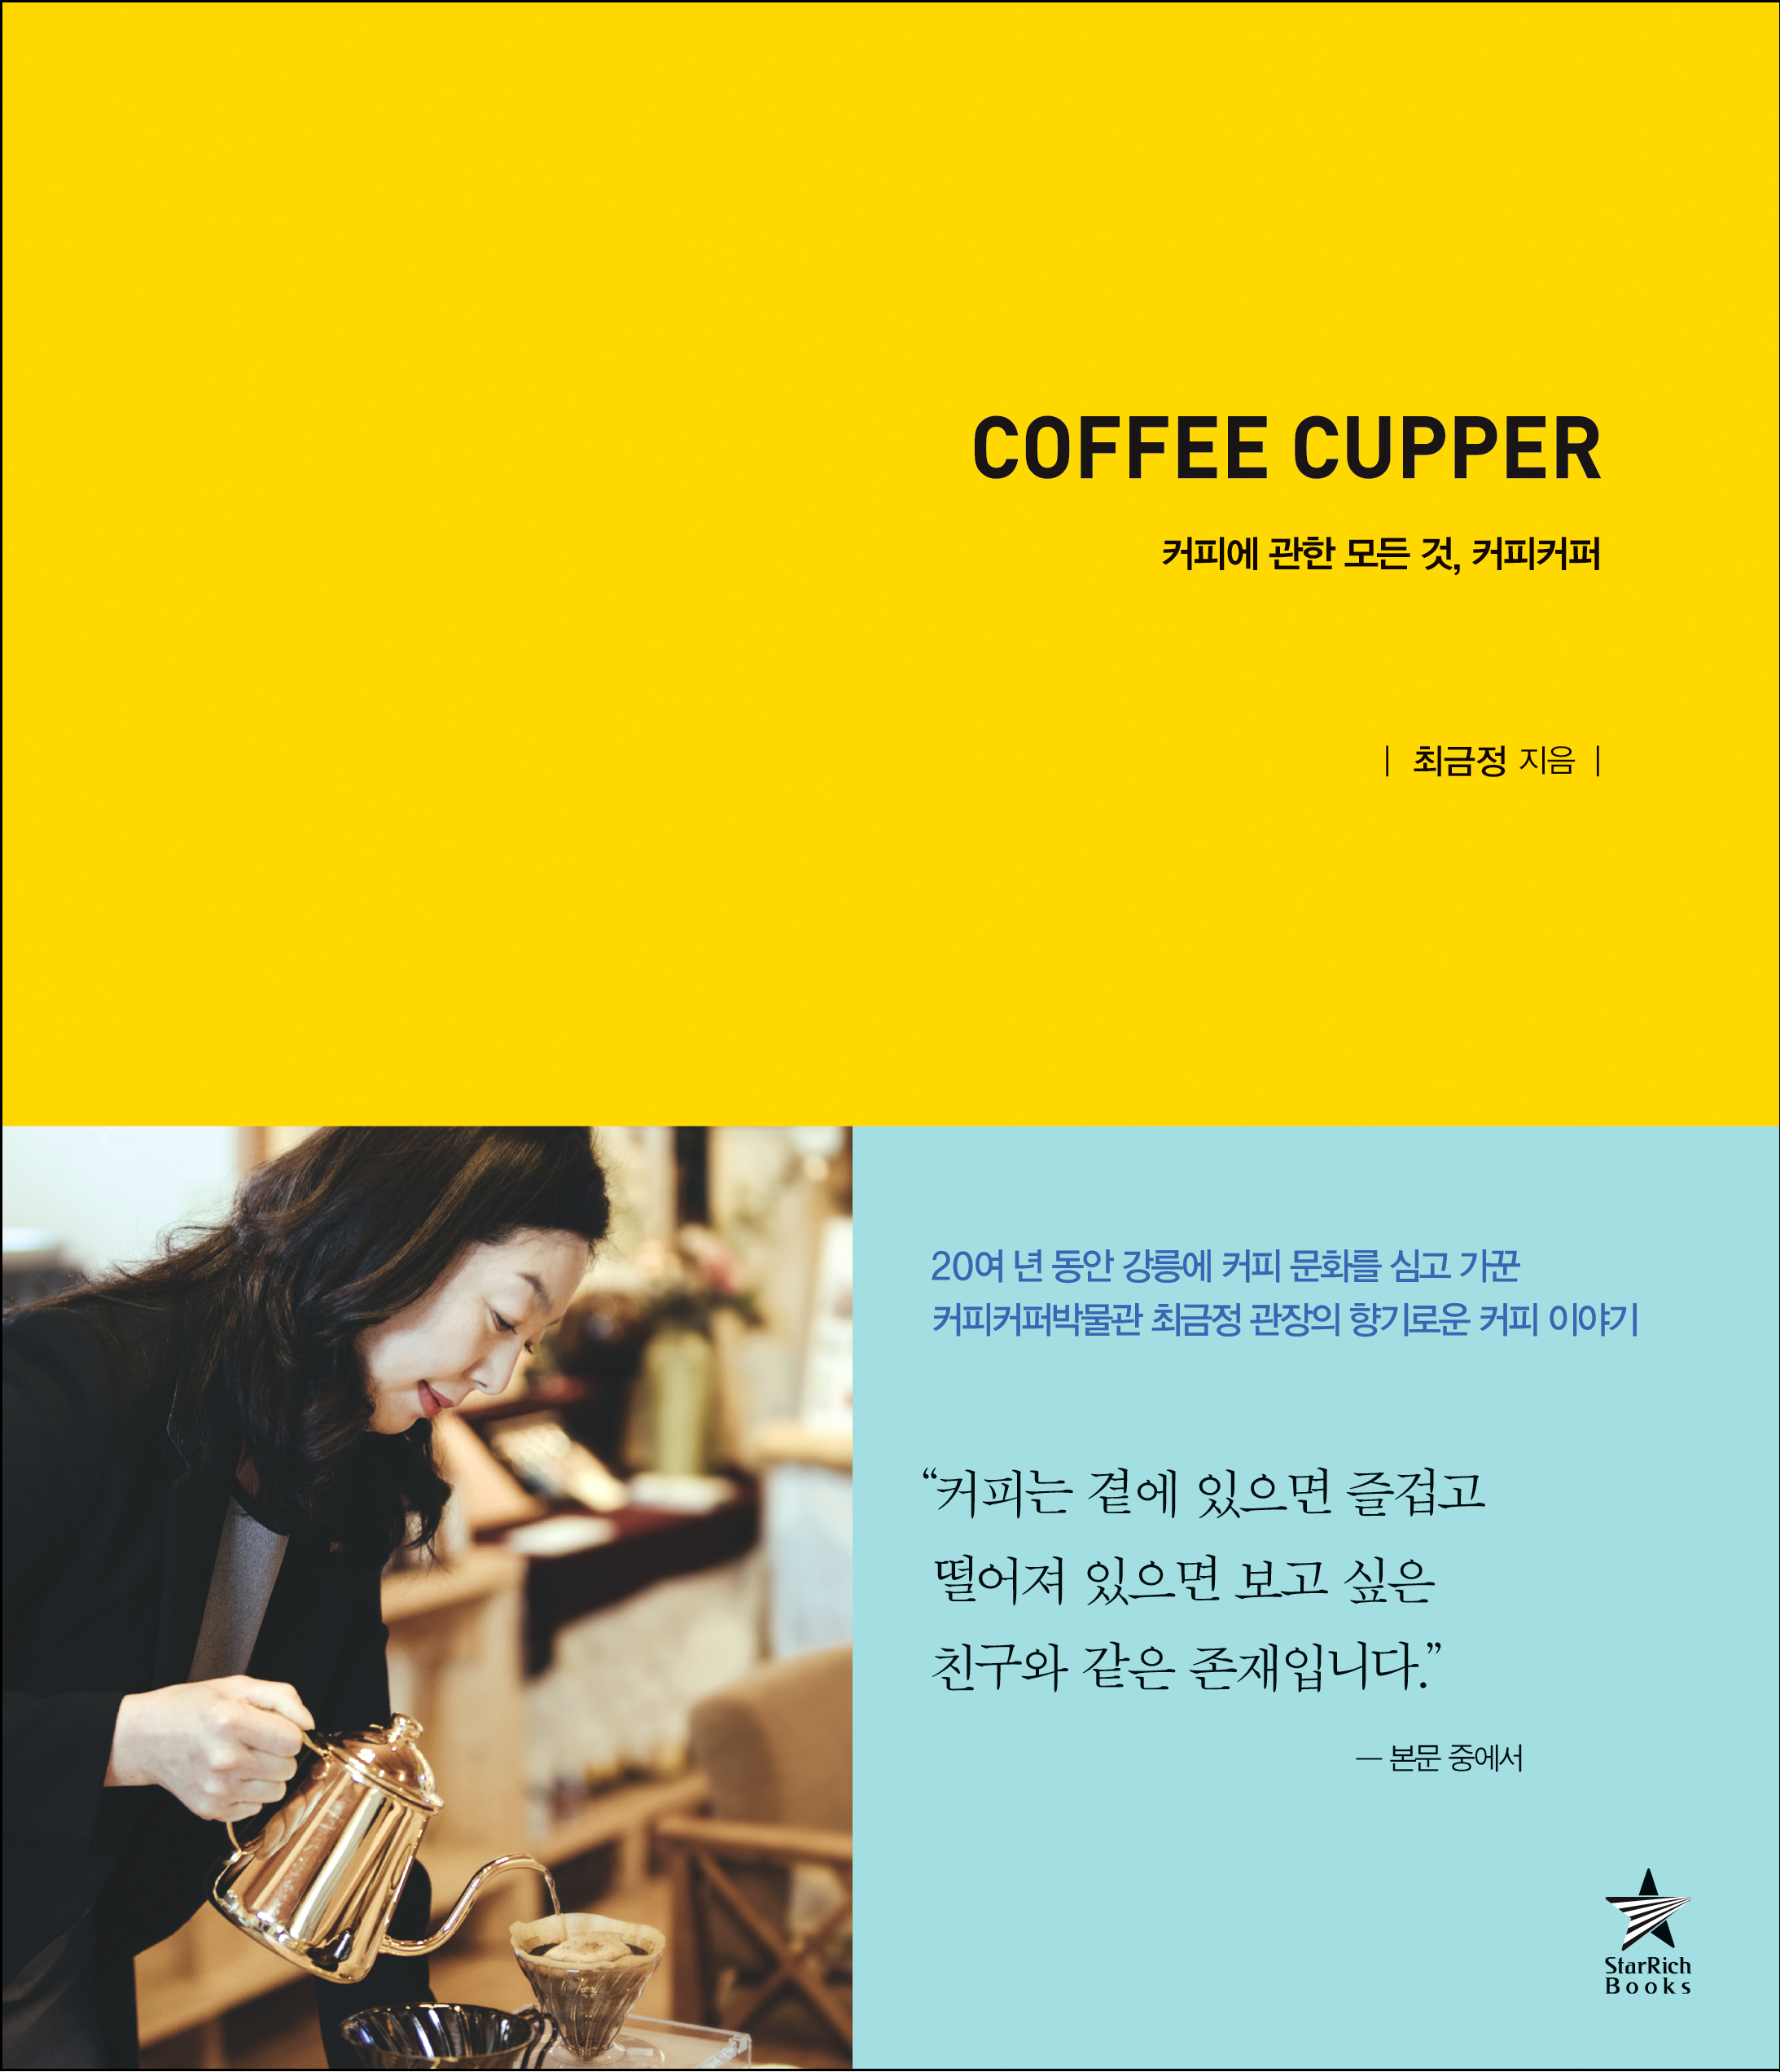 《커피커퍼》에는 커피의 역사와 문화, 맛과 멋은 물론 인문학적으로 읽어낸 작가의 다양하고 독특한 시선이 담겨있다. 